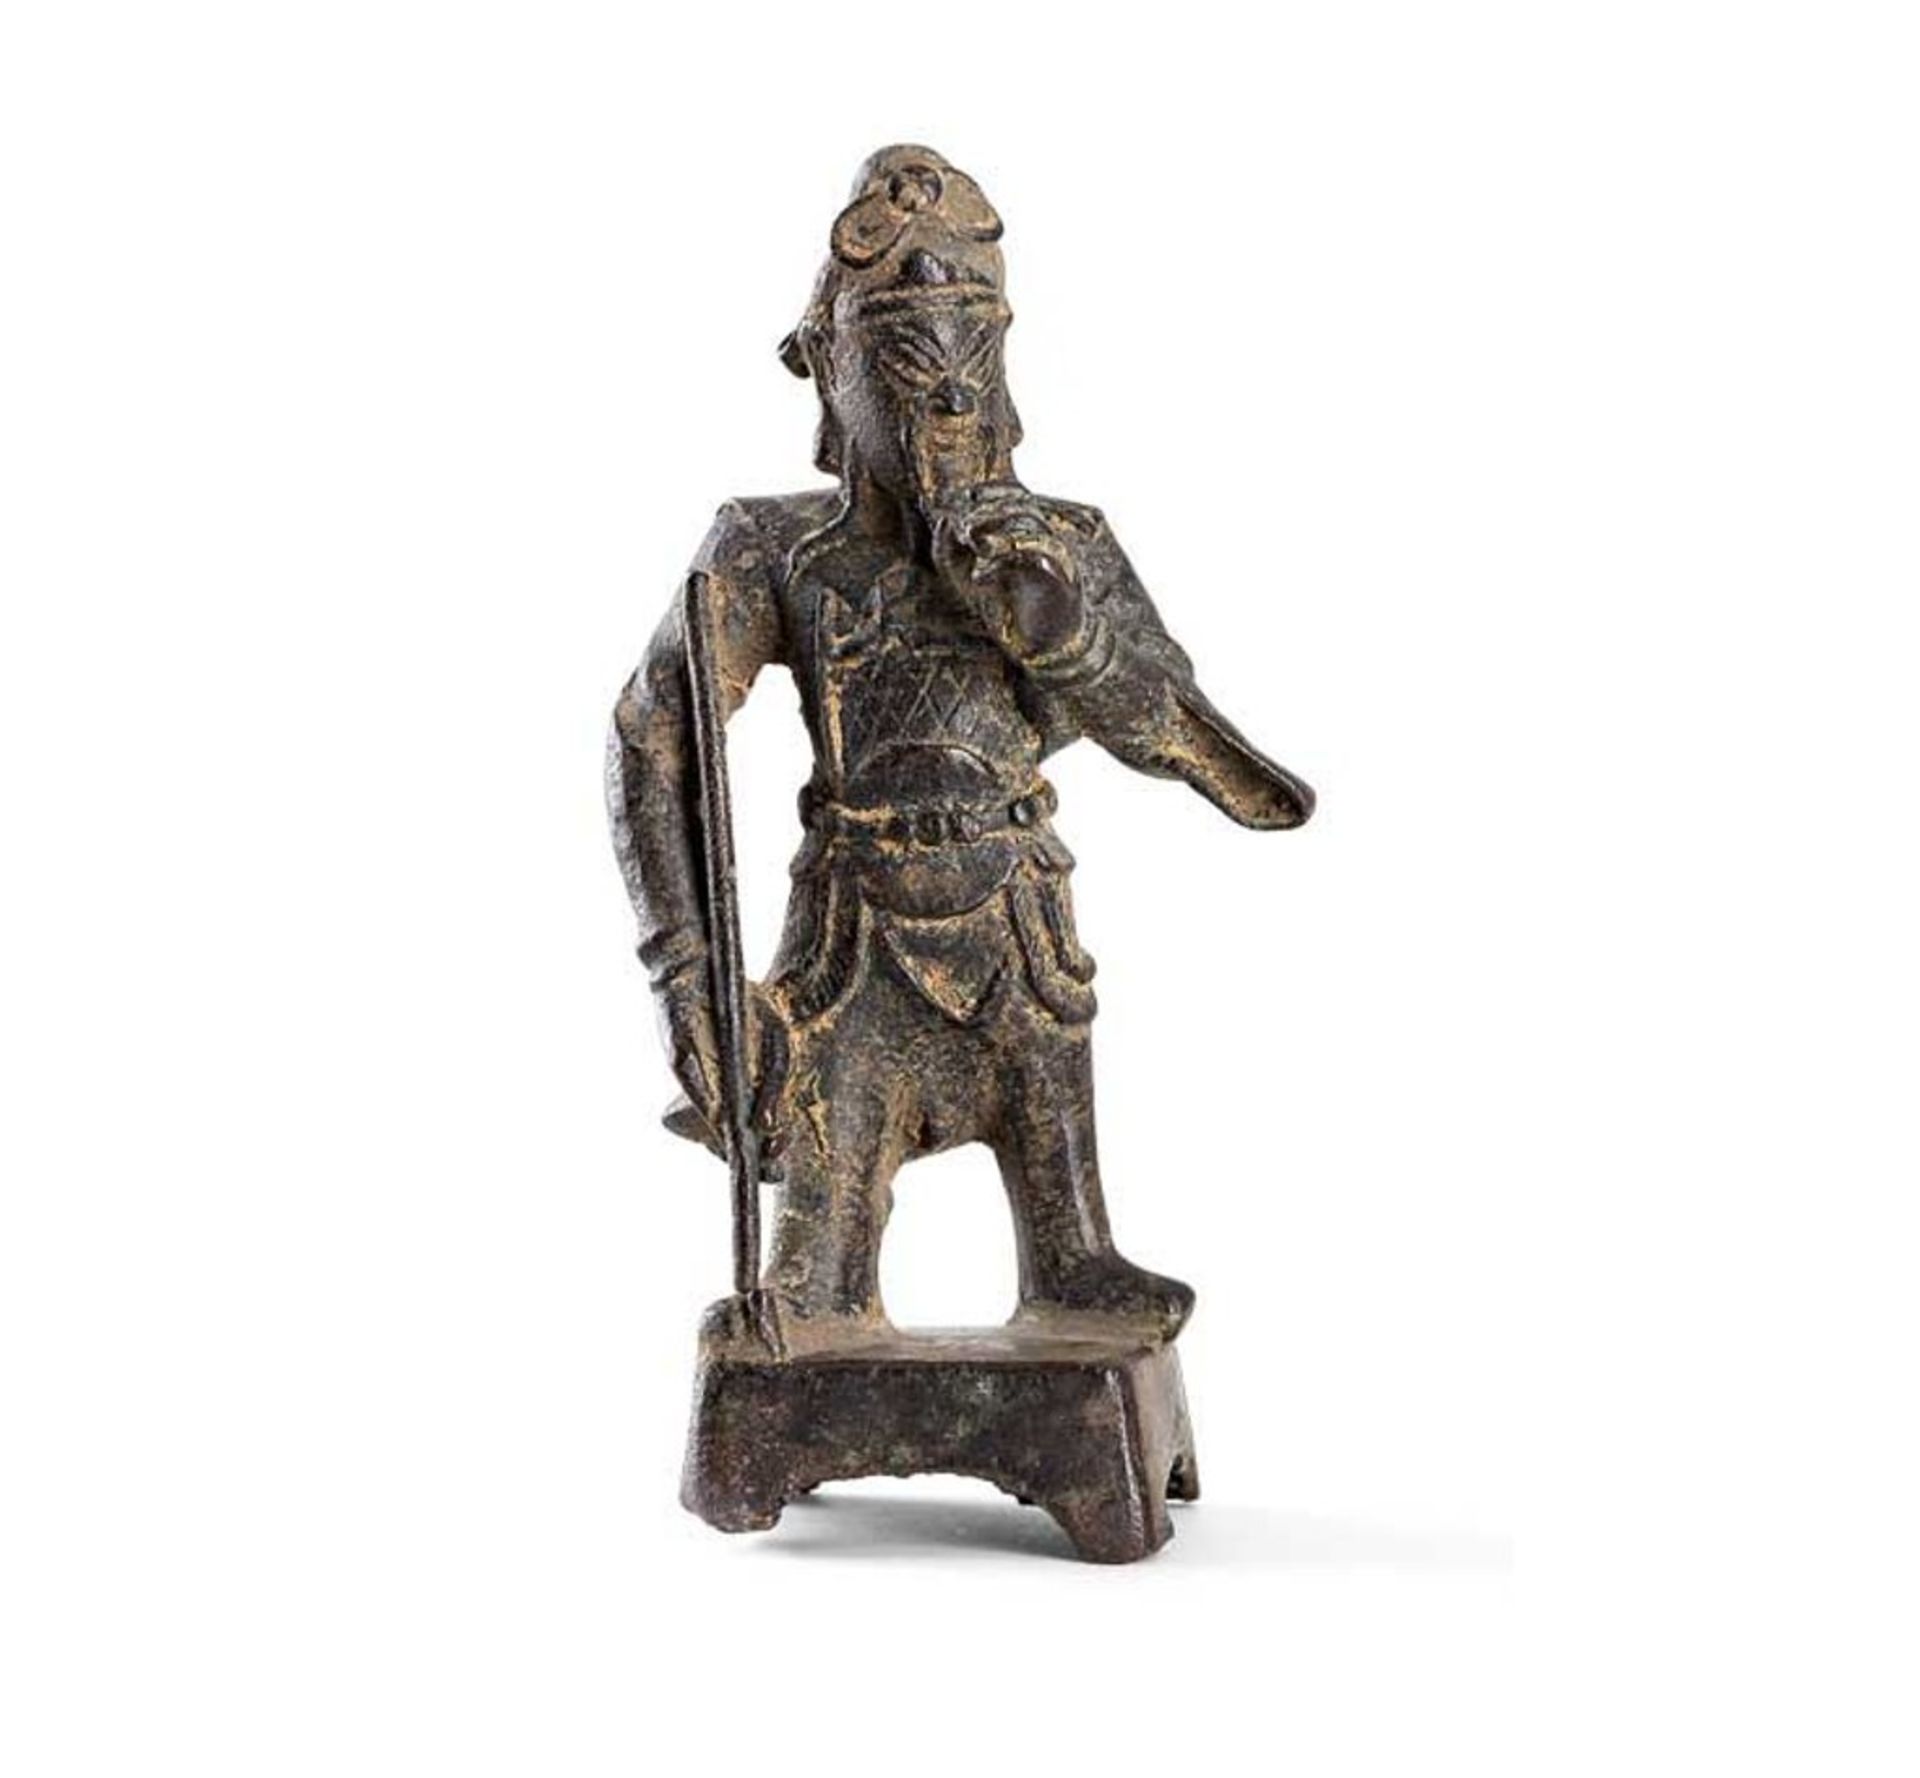 Guandi. Auf Plinthensockel stehender General. Bronze. H 12,5 cm. China, späte Ming-Zeit (?), 17.